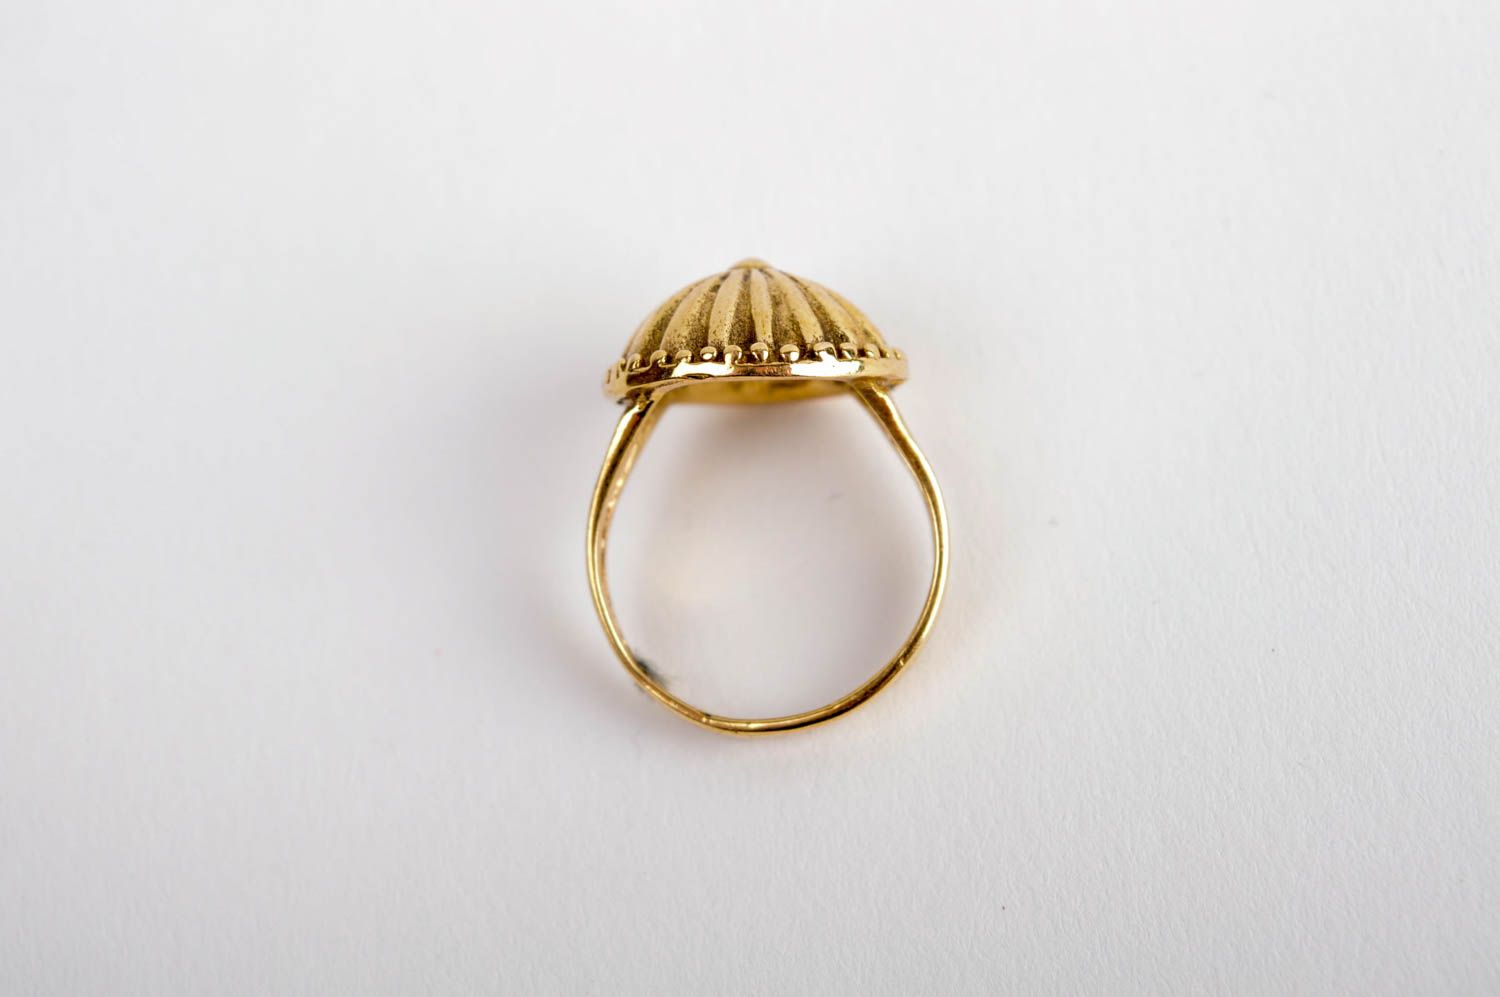 Handmade brass ring stylish designer ring beautiful female jewelry gift for her photo 5